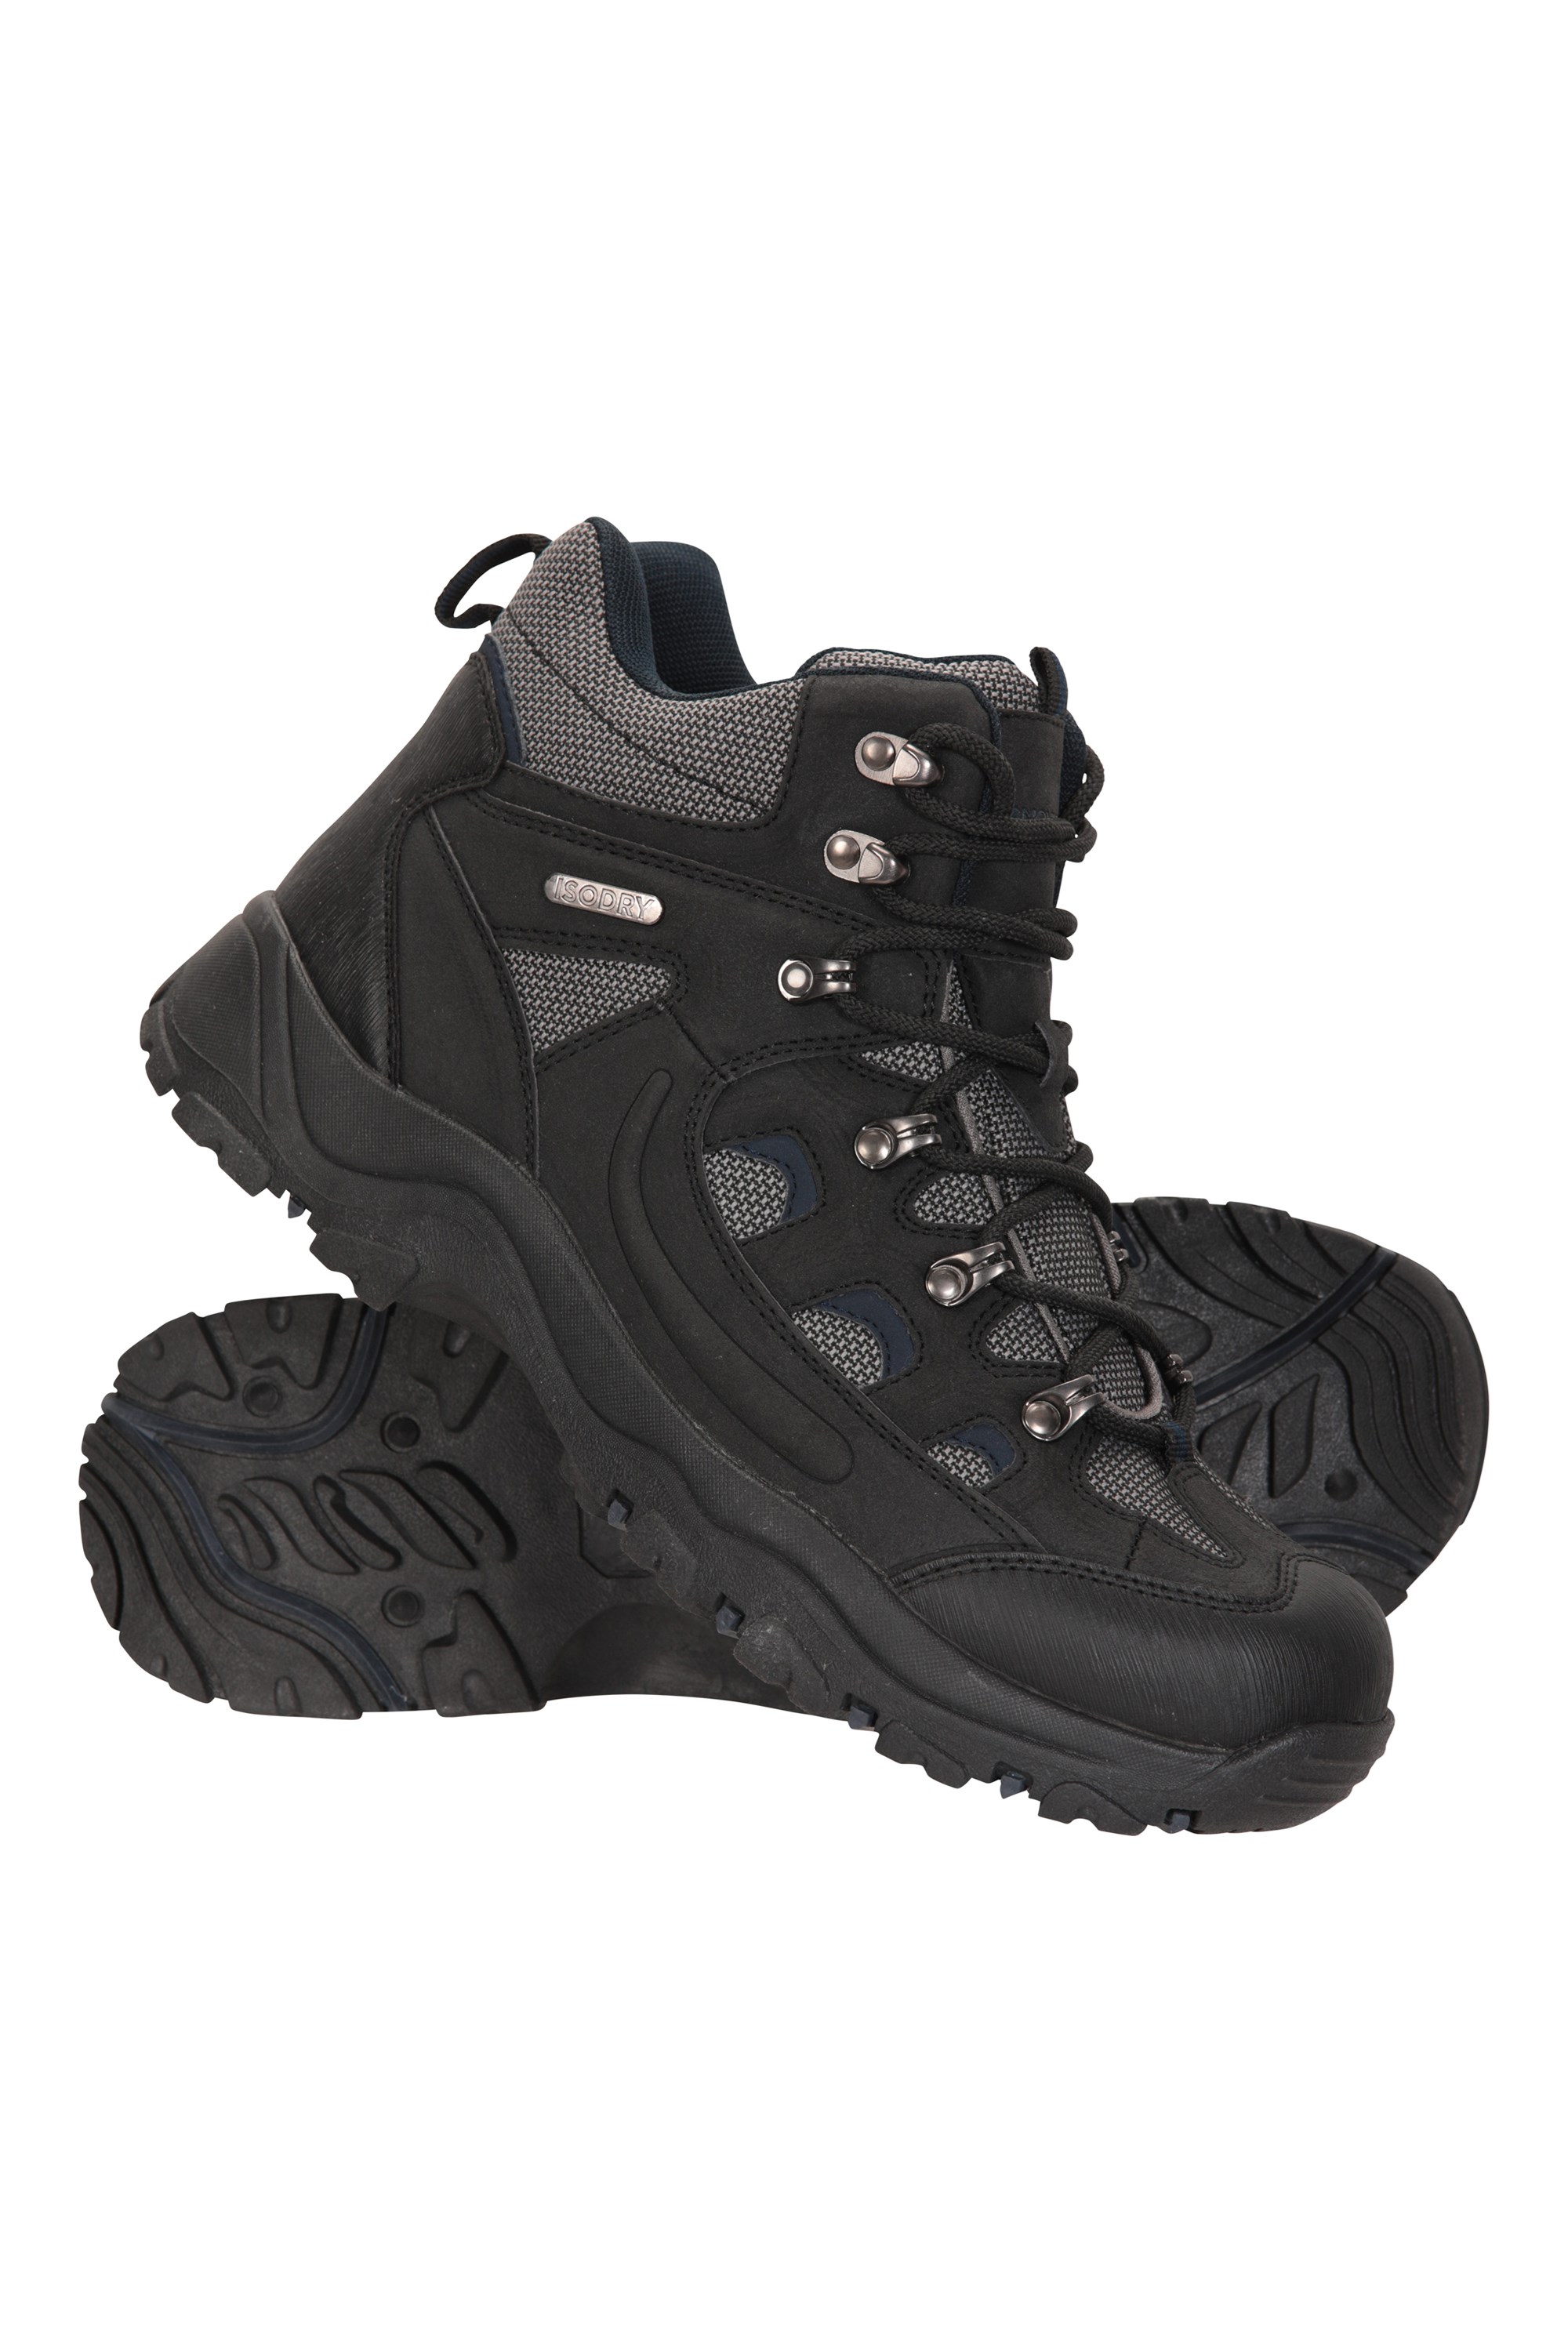 Adventurer Mens Waterproof Boots - Black